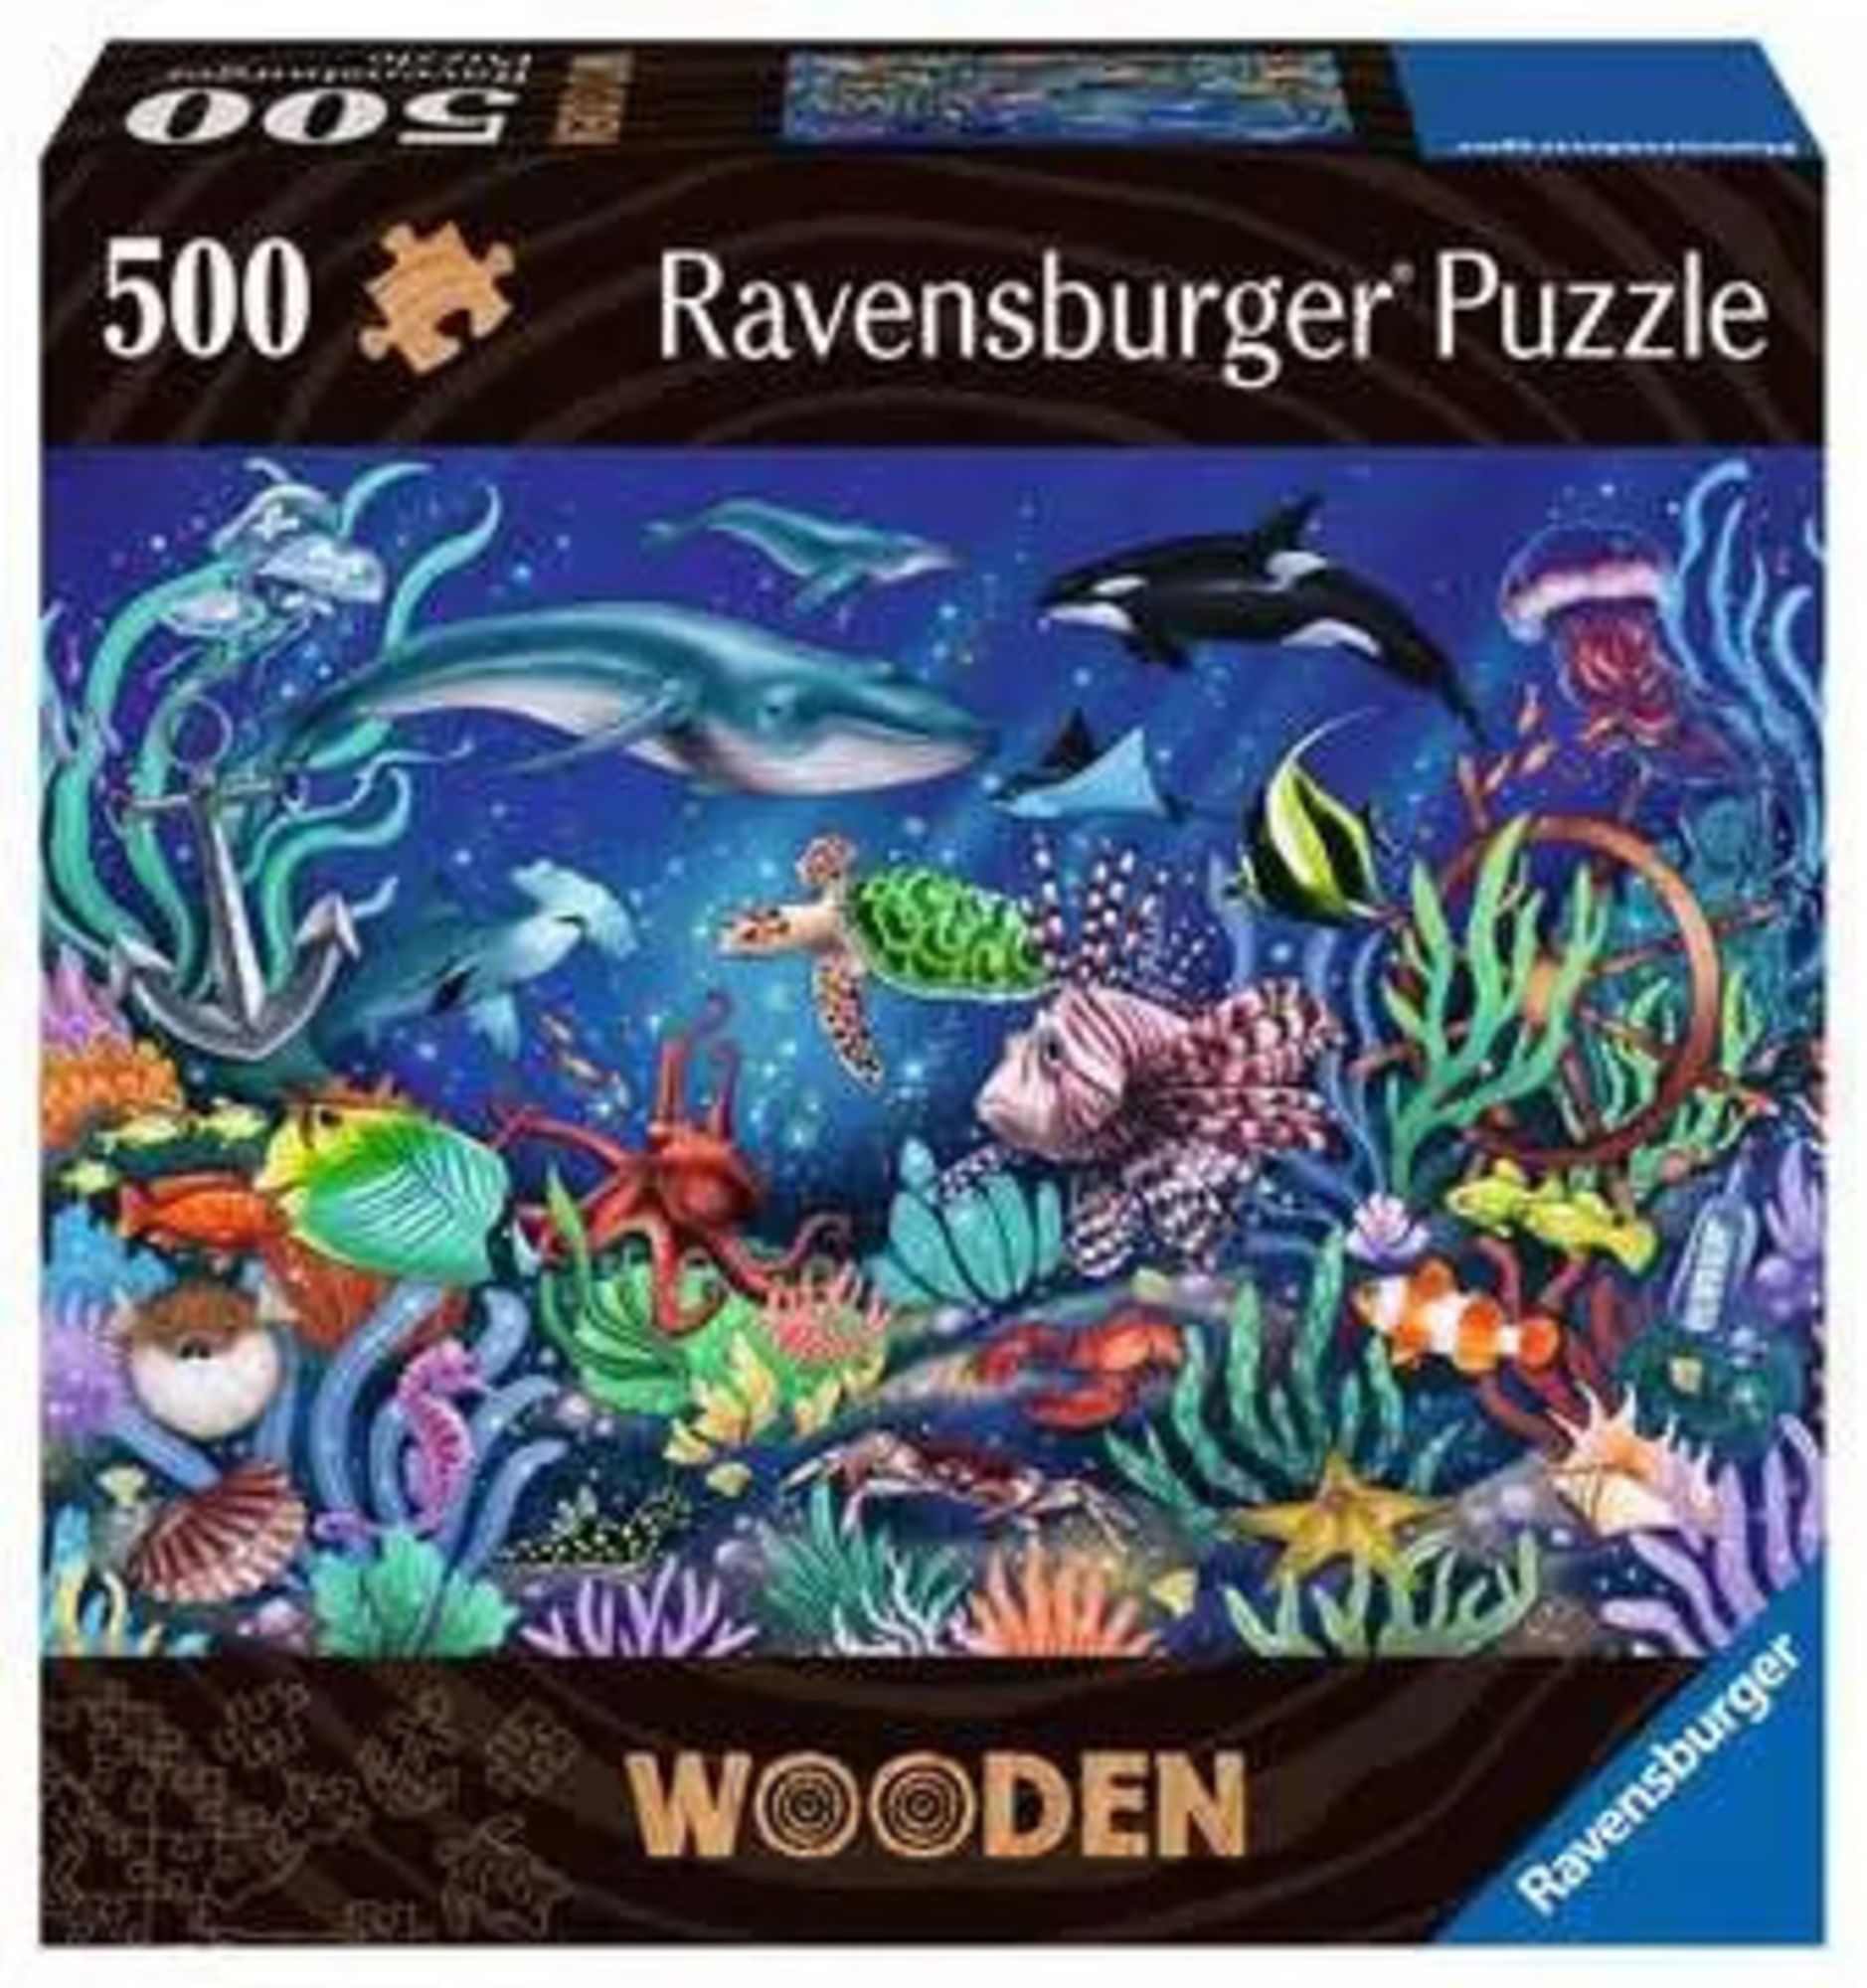 Ravensburger 17515 - Wooden, Unten im Meer, Holz-Puzzle inkl. 40 Whimsies,  500 Teile' kaufen - Spielwaren